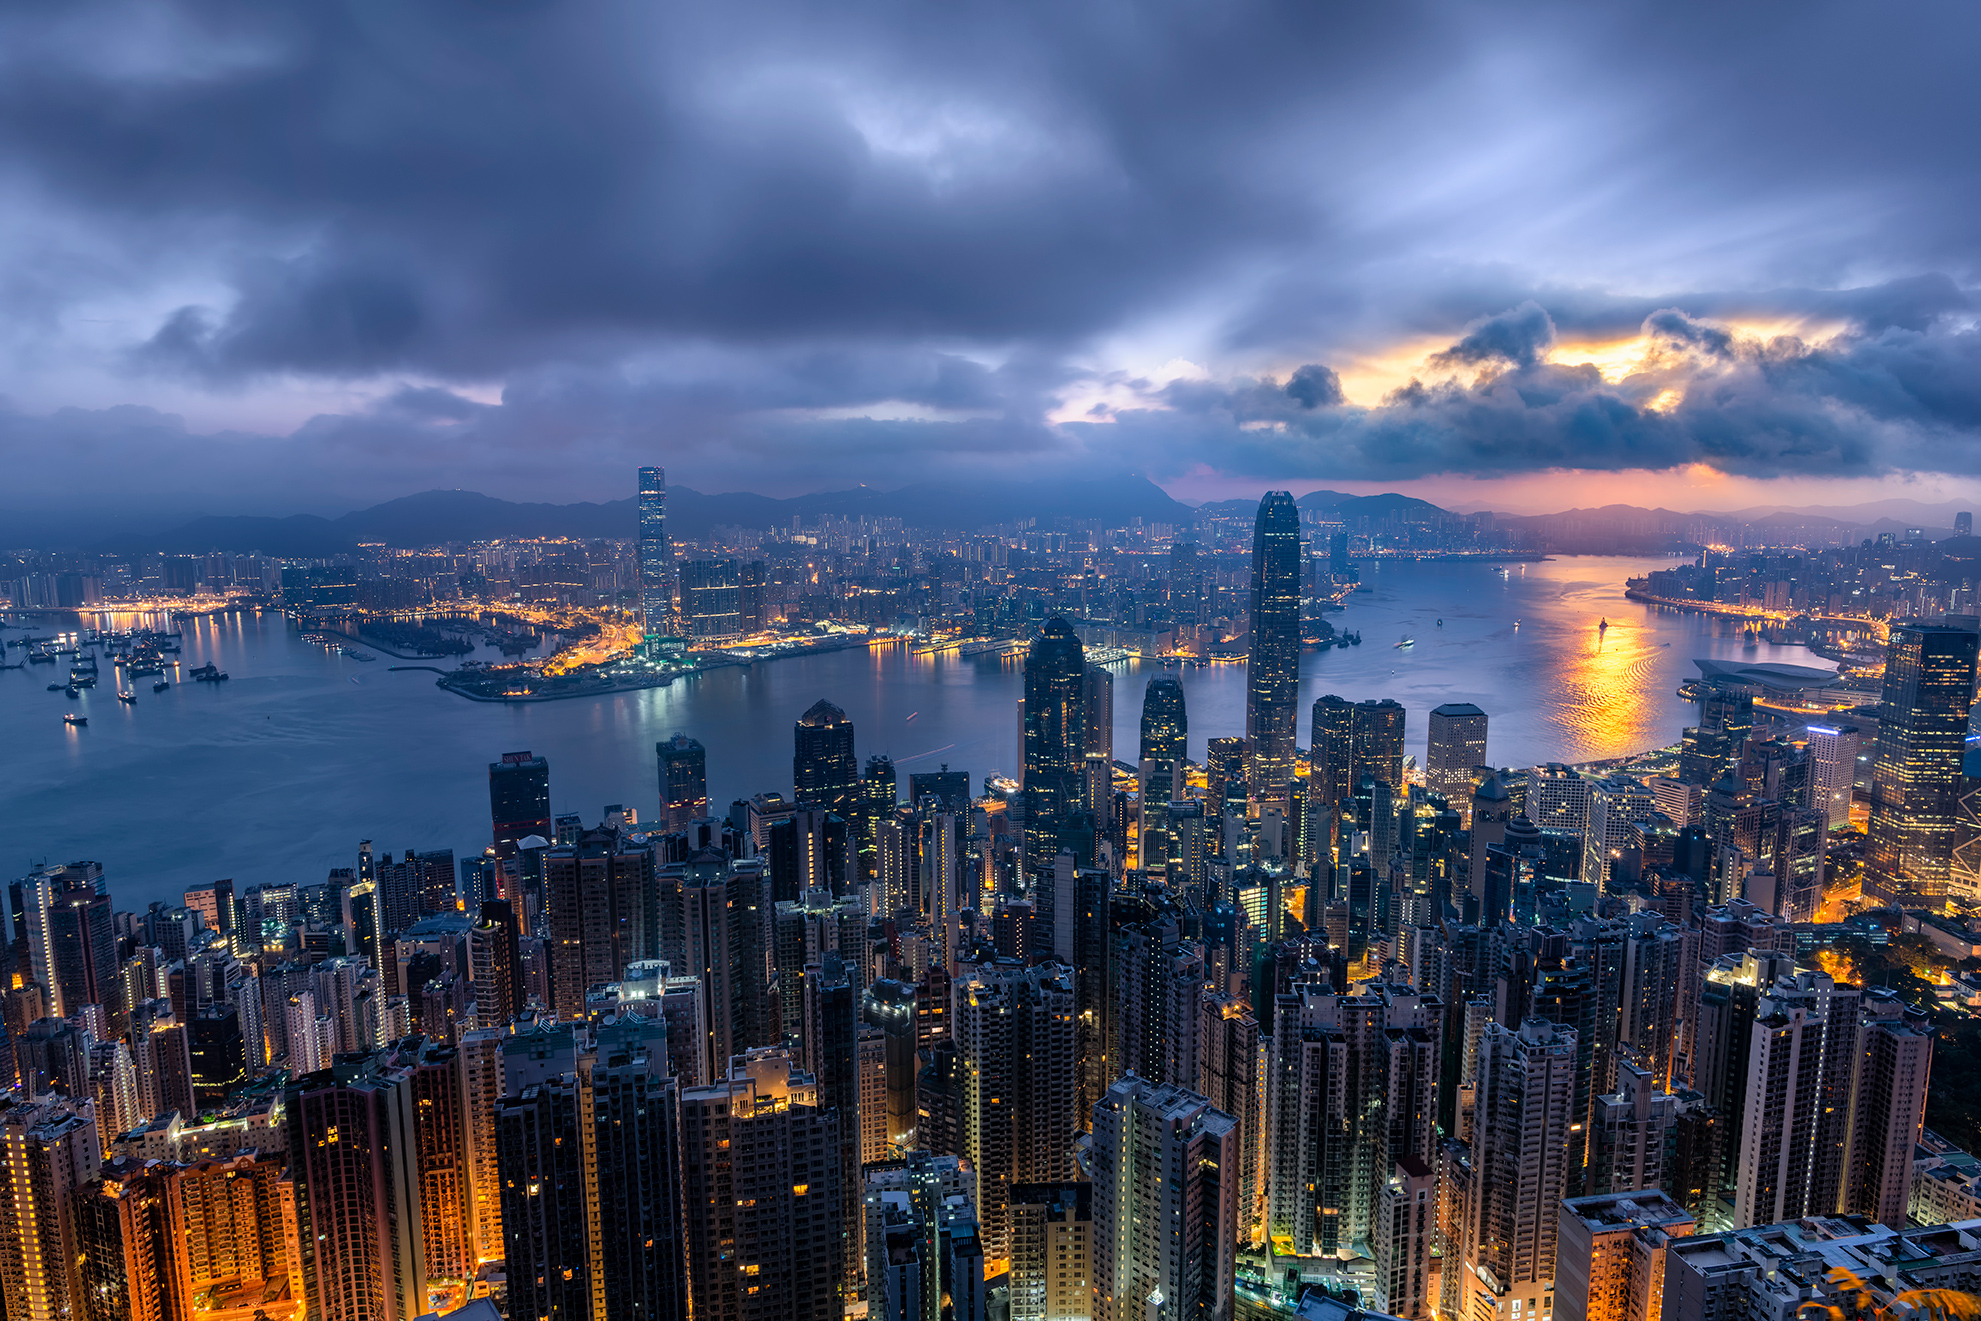 overlooking Hong Kong at sunrise